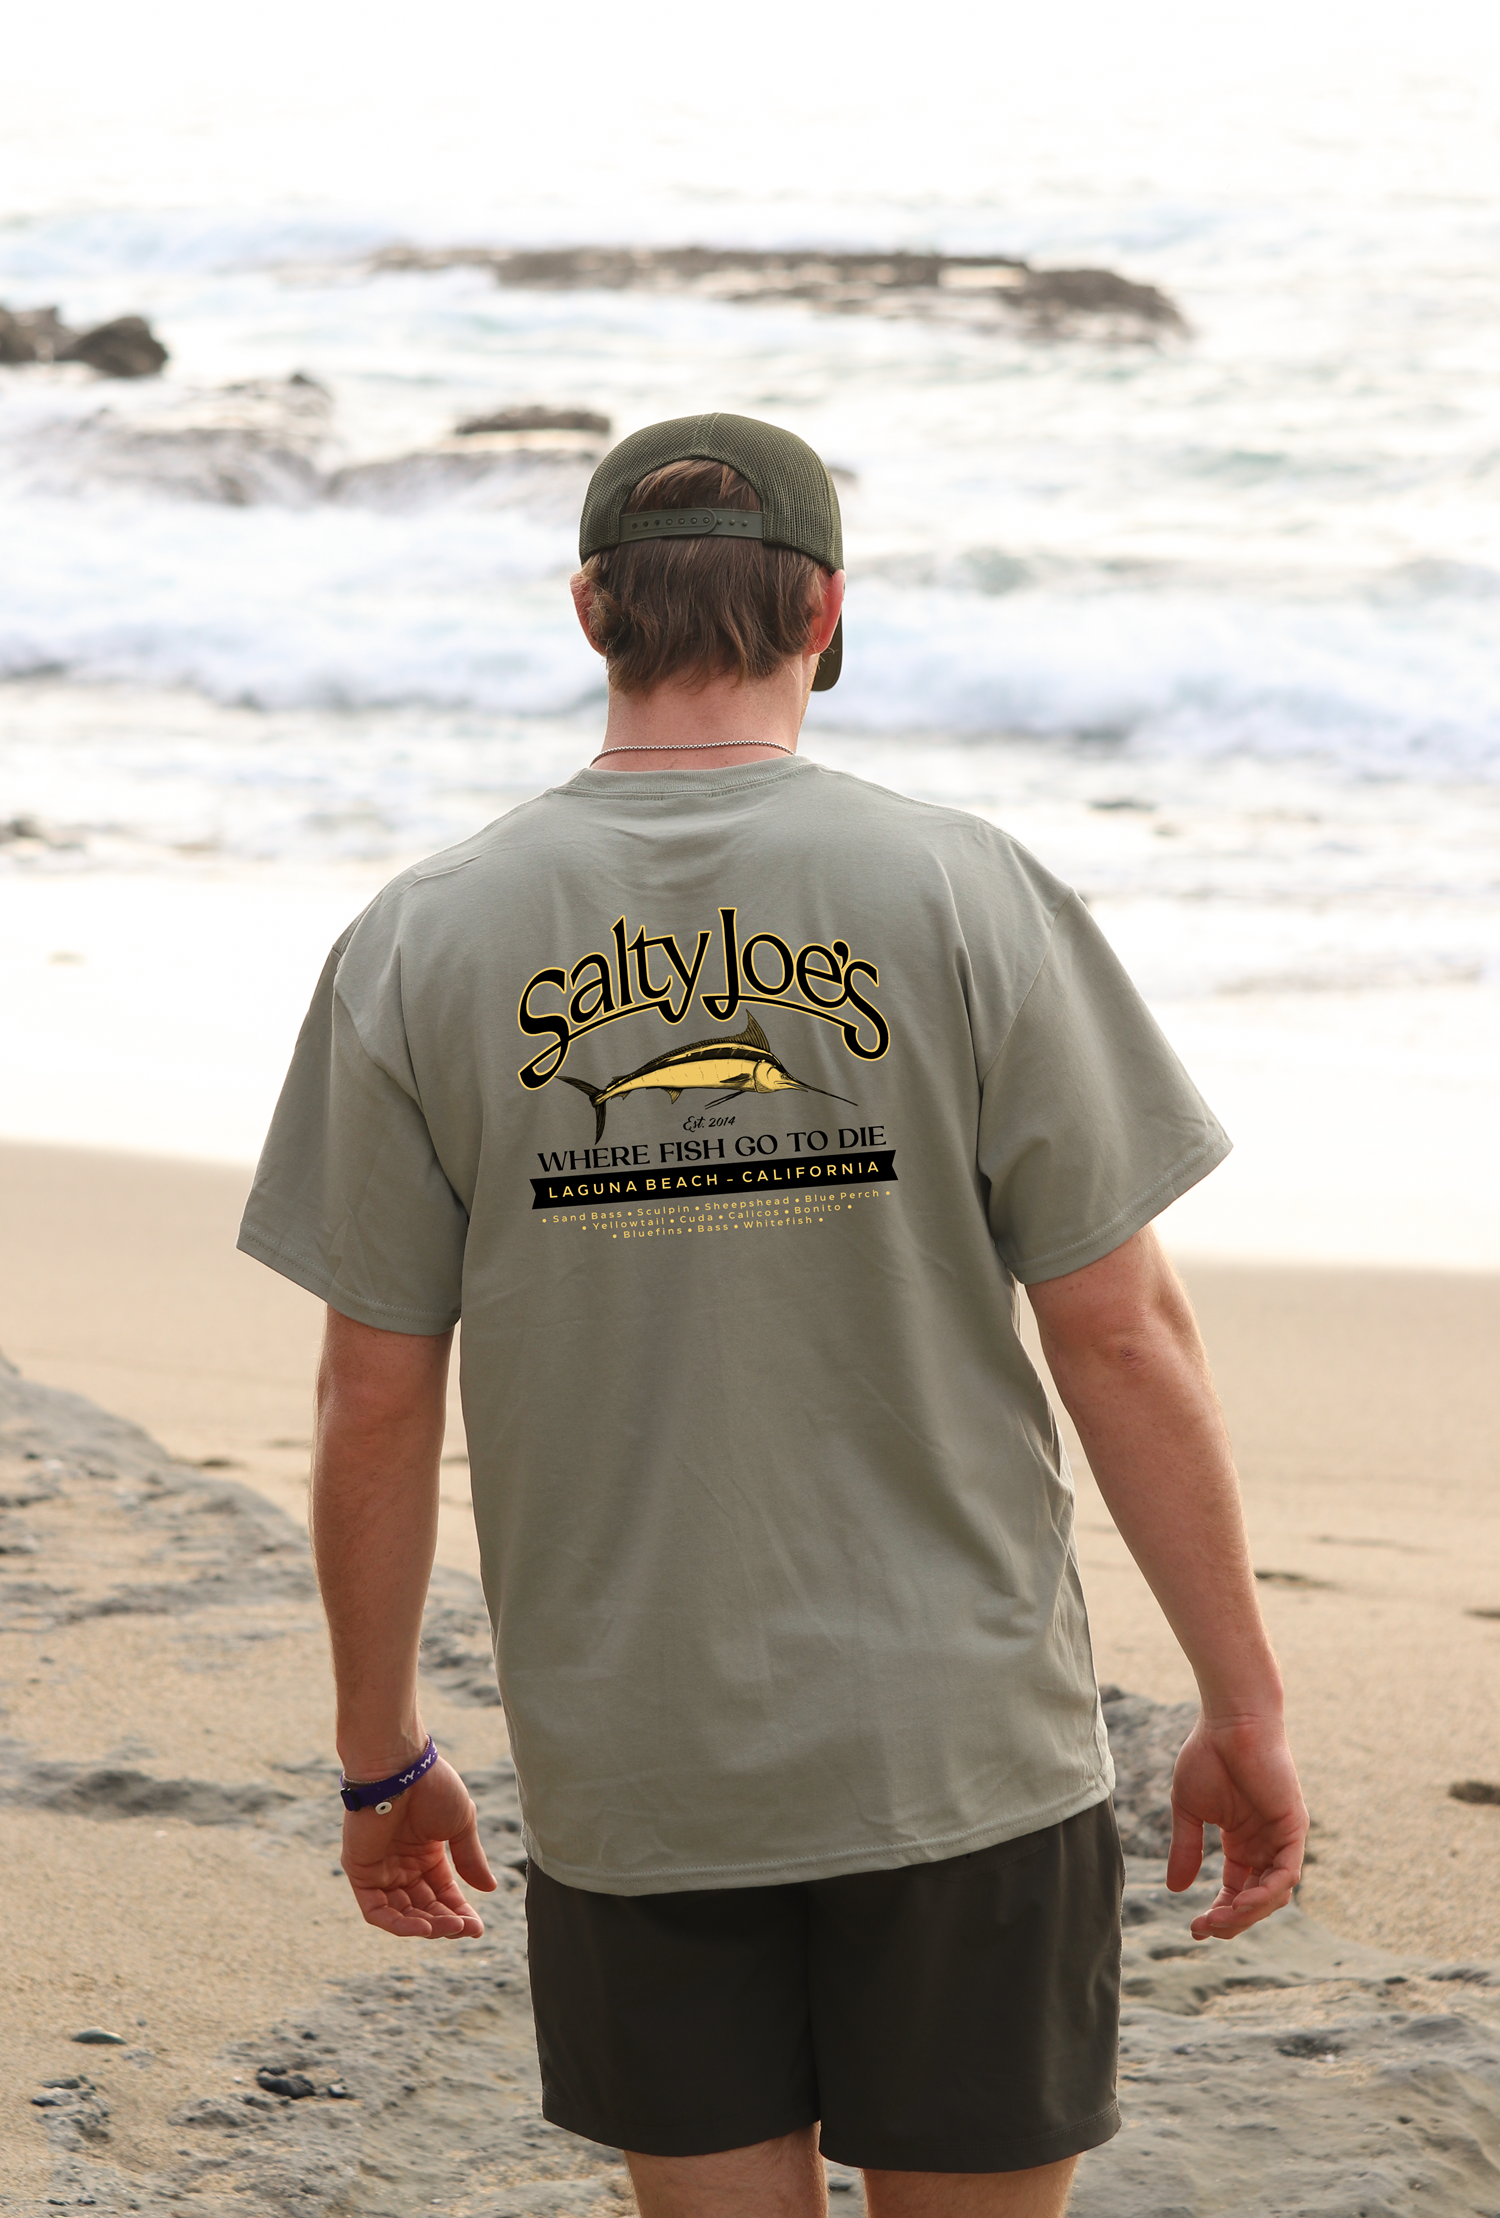 a man wearing his Salty Joe's fishing t shirt